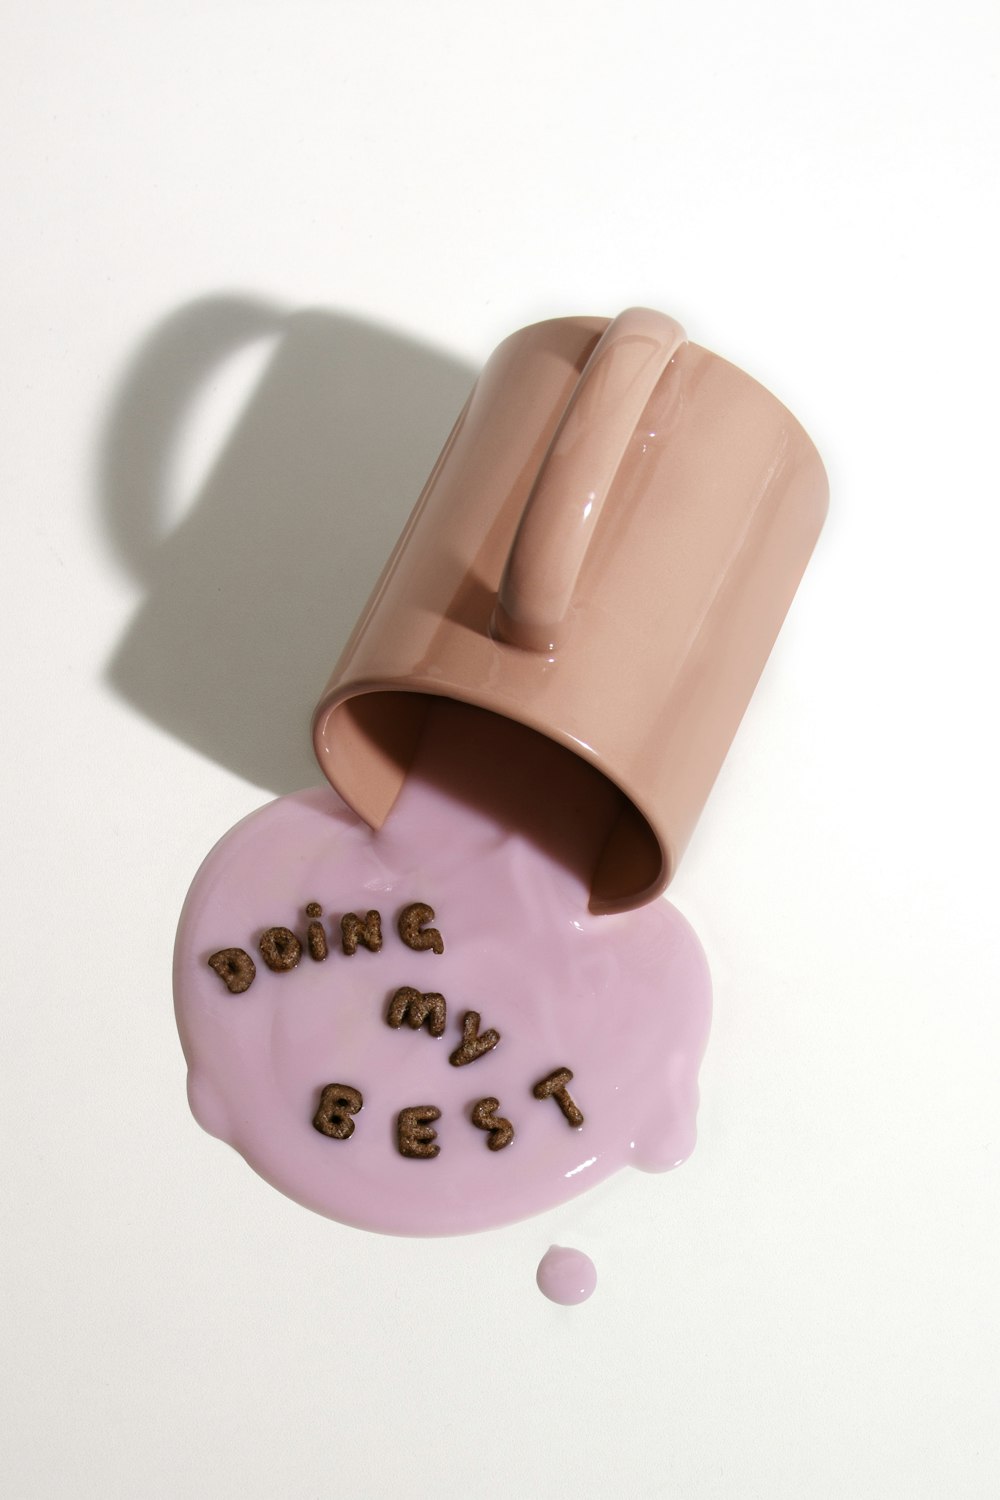 愛のプリントを施したピンクのセラミックマグカップ